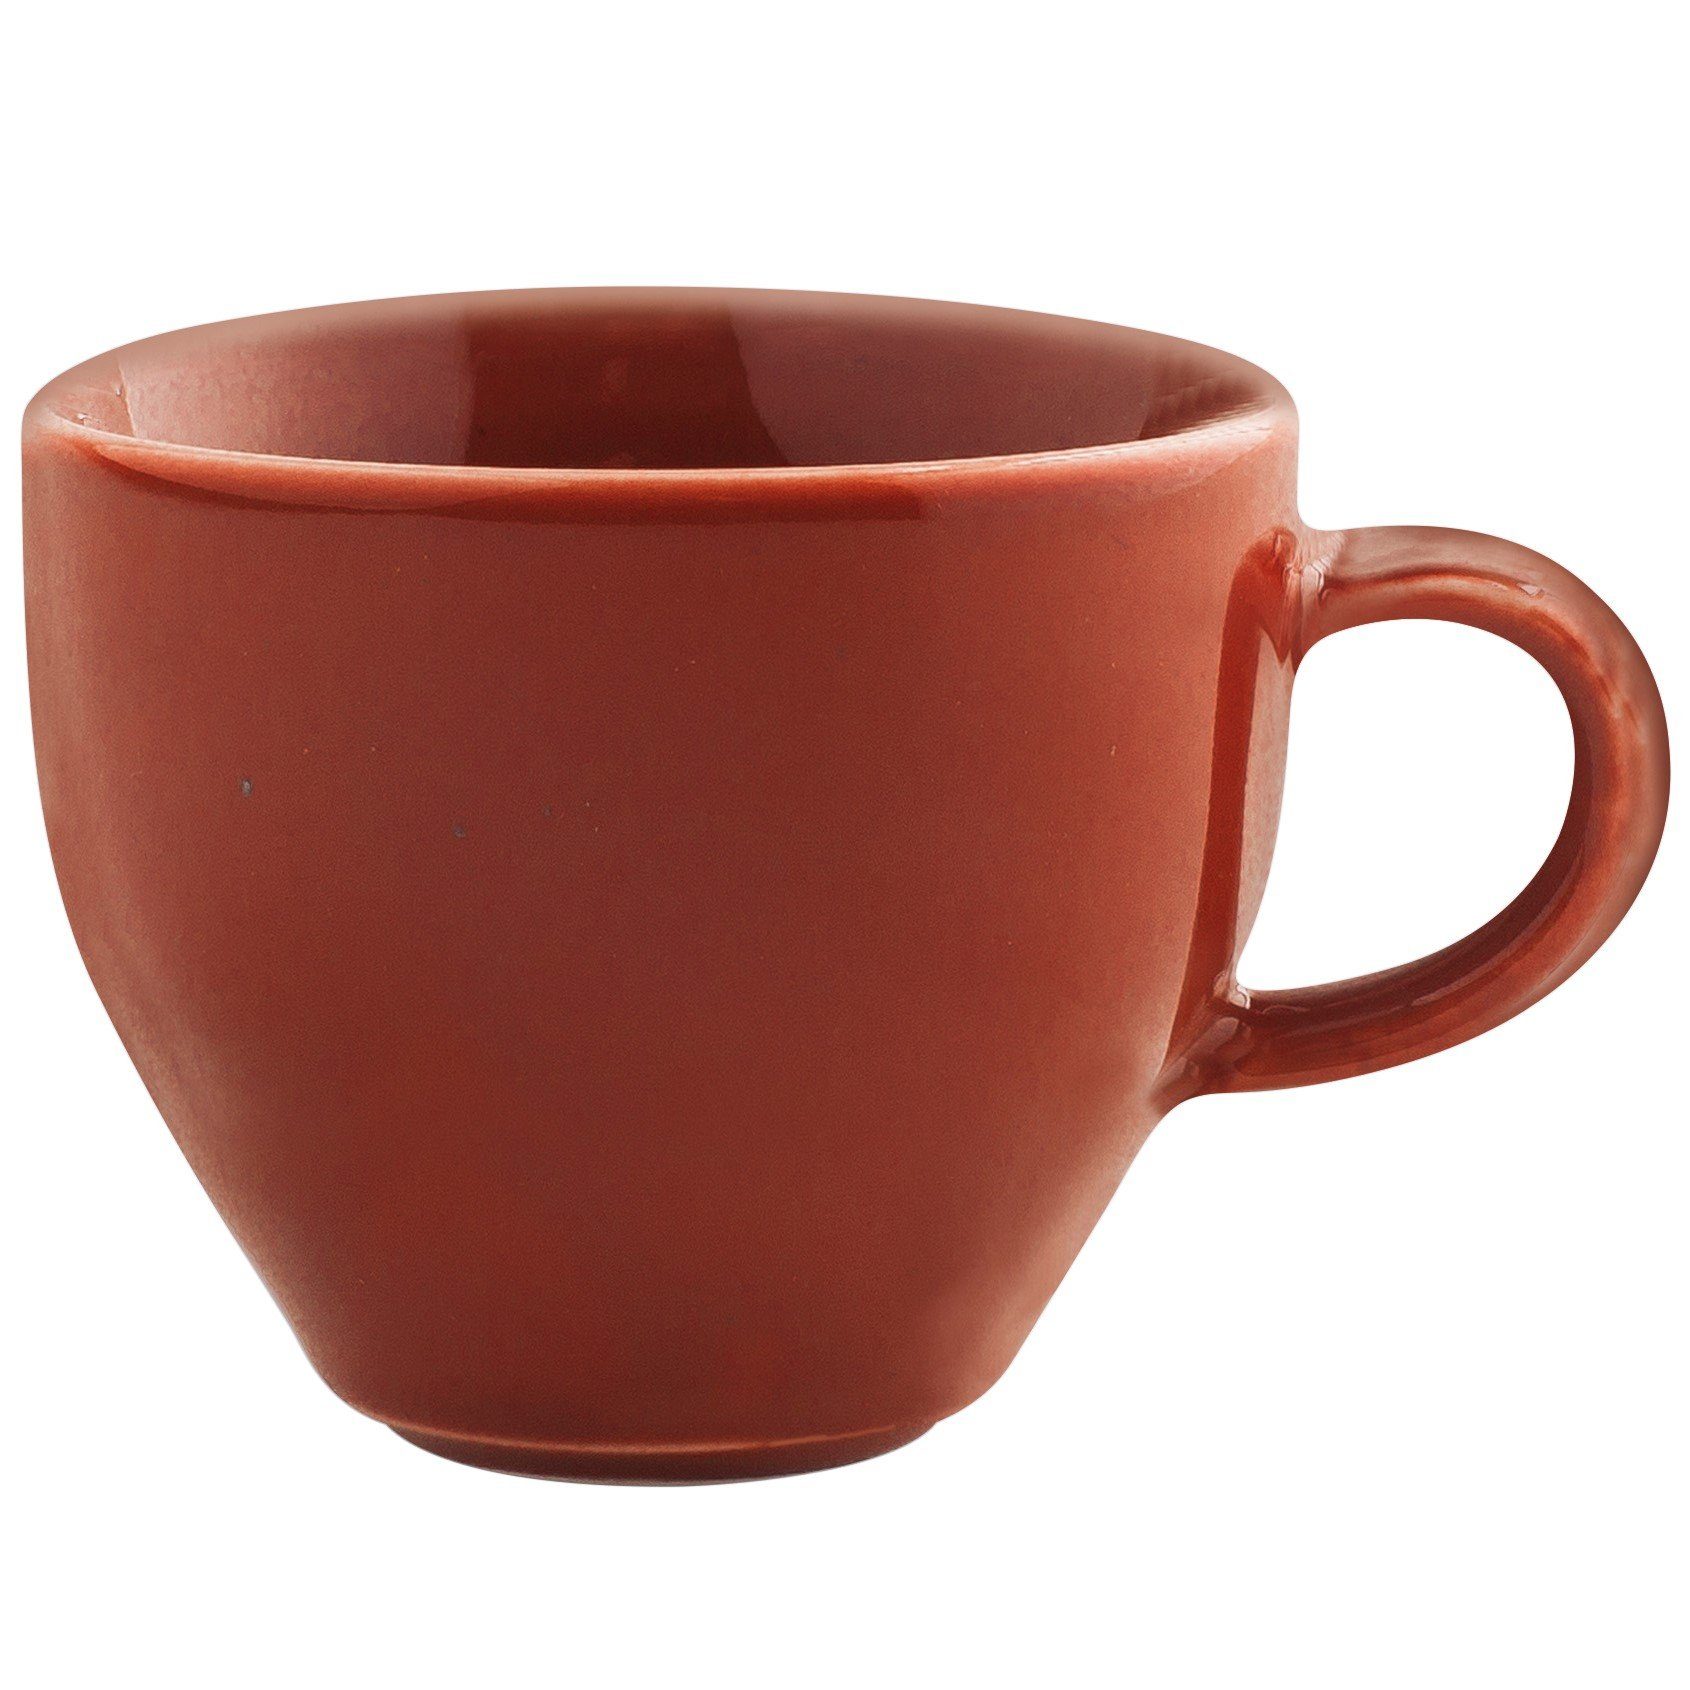 Kahla Tasse Homestyle Milchkaffeetasse in Handglasiert, Made Porzellan, l, Germany 0,30 siena red